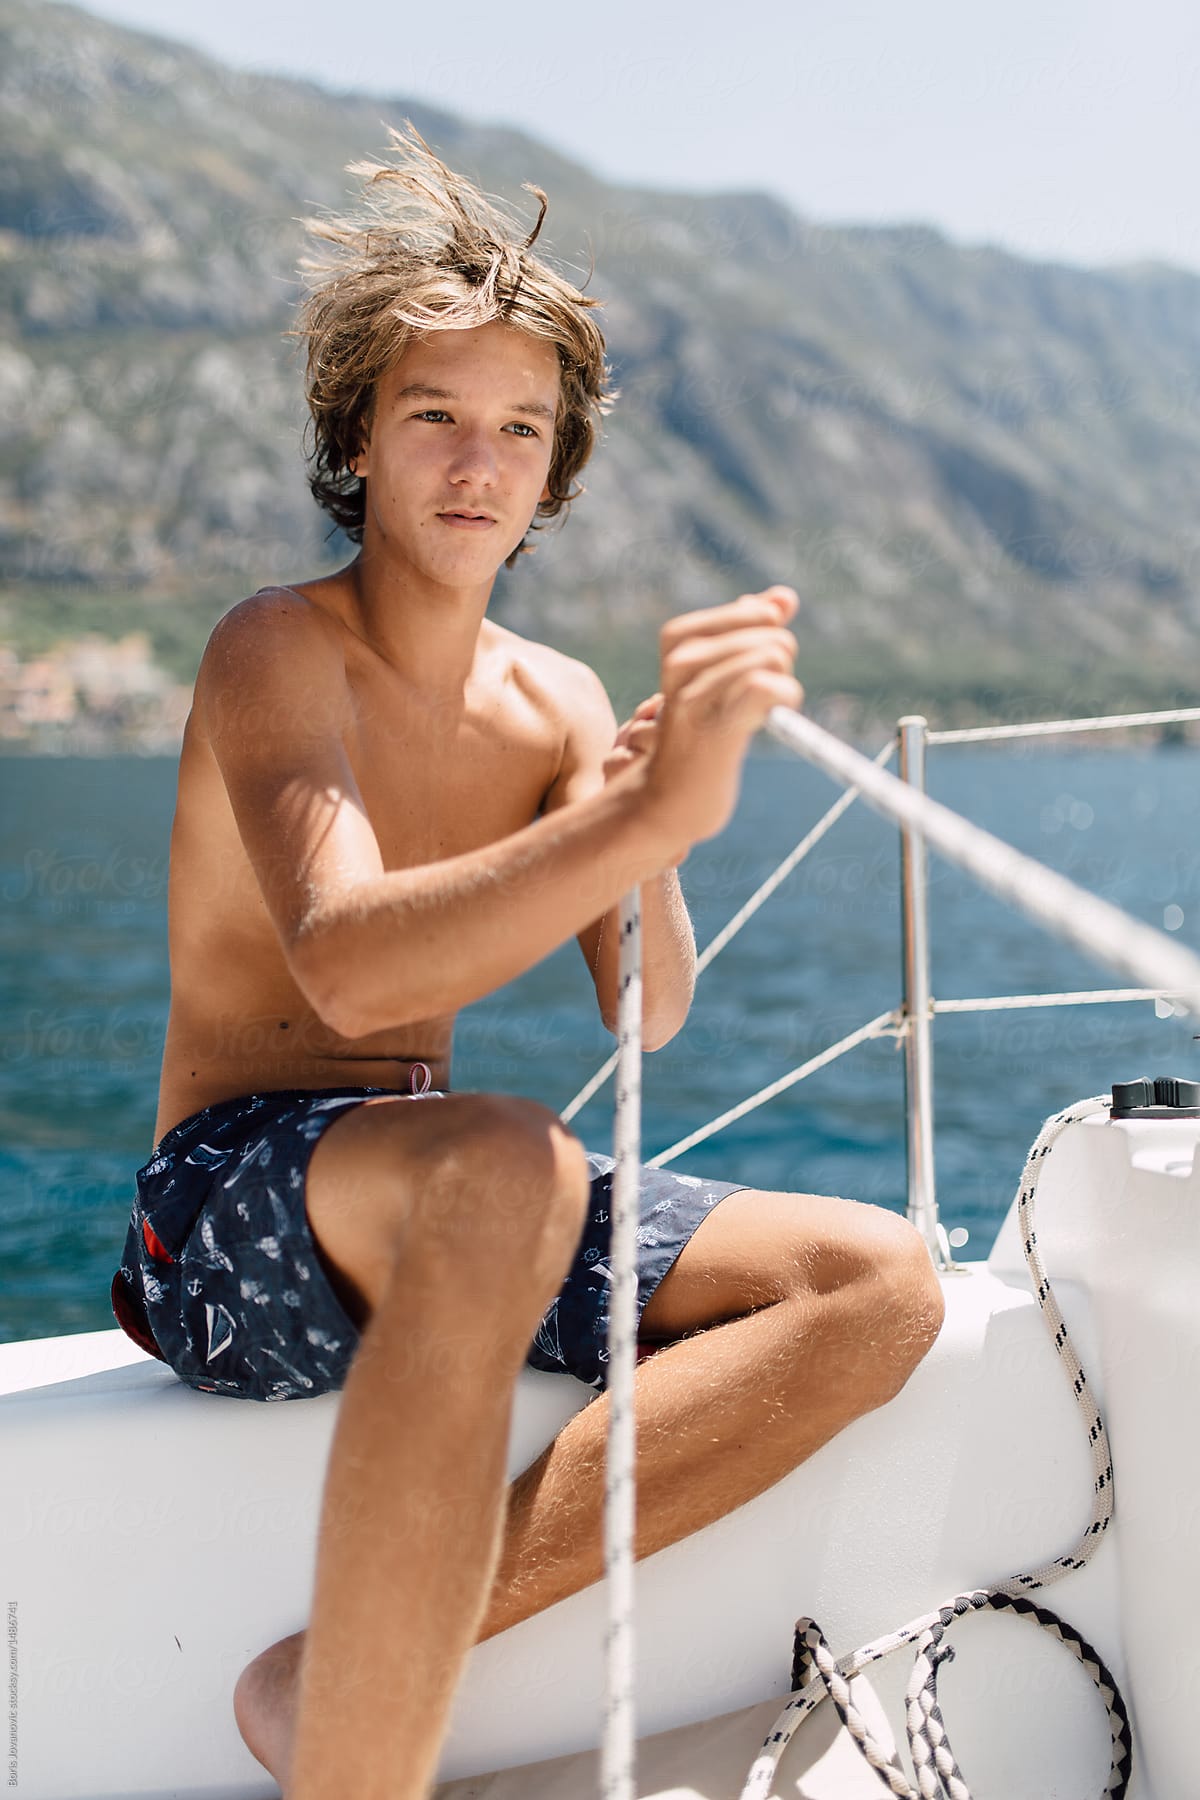 Teenager Preparing Boat For Sailing